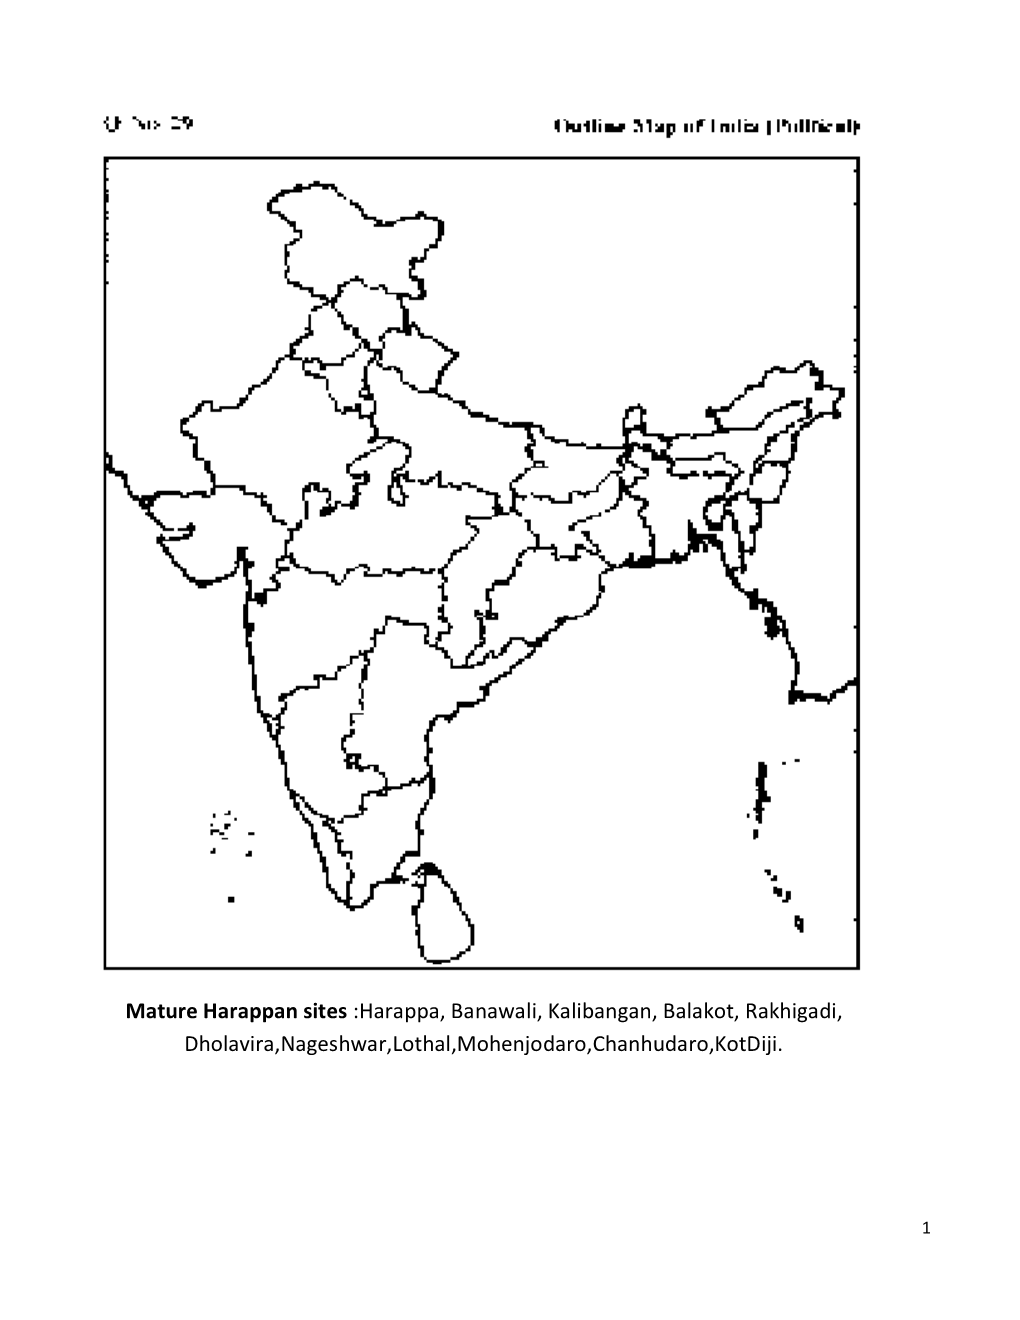 Mature Harappan Sites :Harappa, Banawali, Kalibangan, Balakot, Rakhigadi, Dholavira,Nageshwar,Lothal,Mohenjodaro,Chanhudaro,Kotdiji